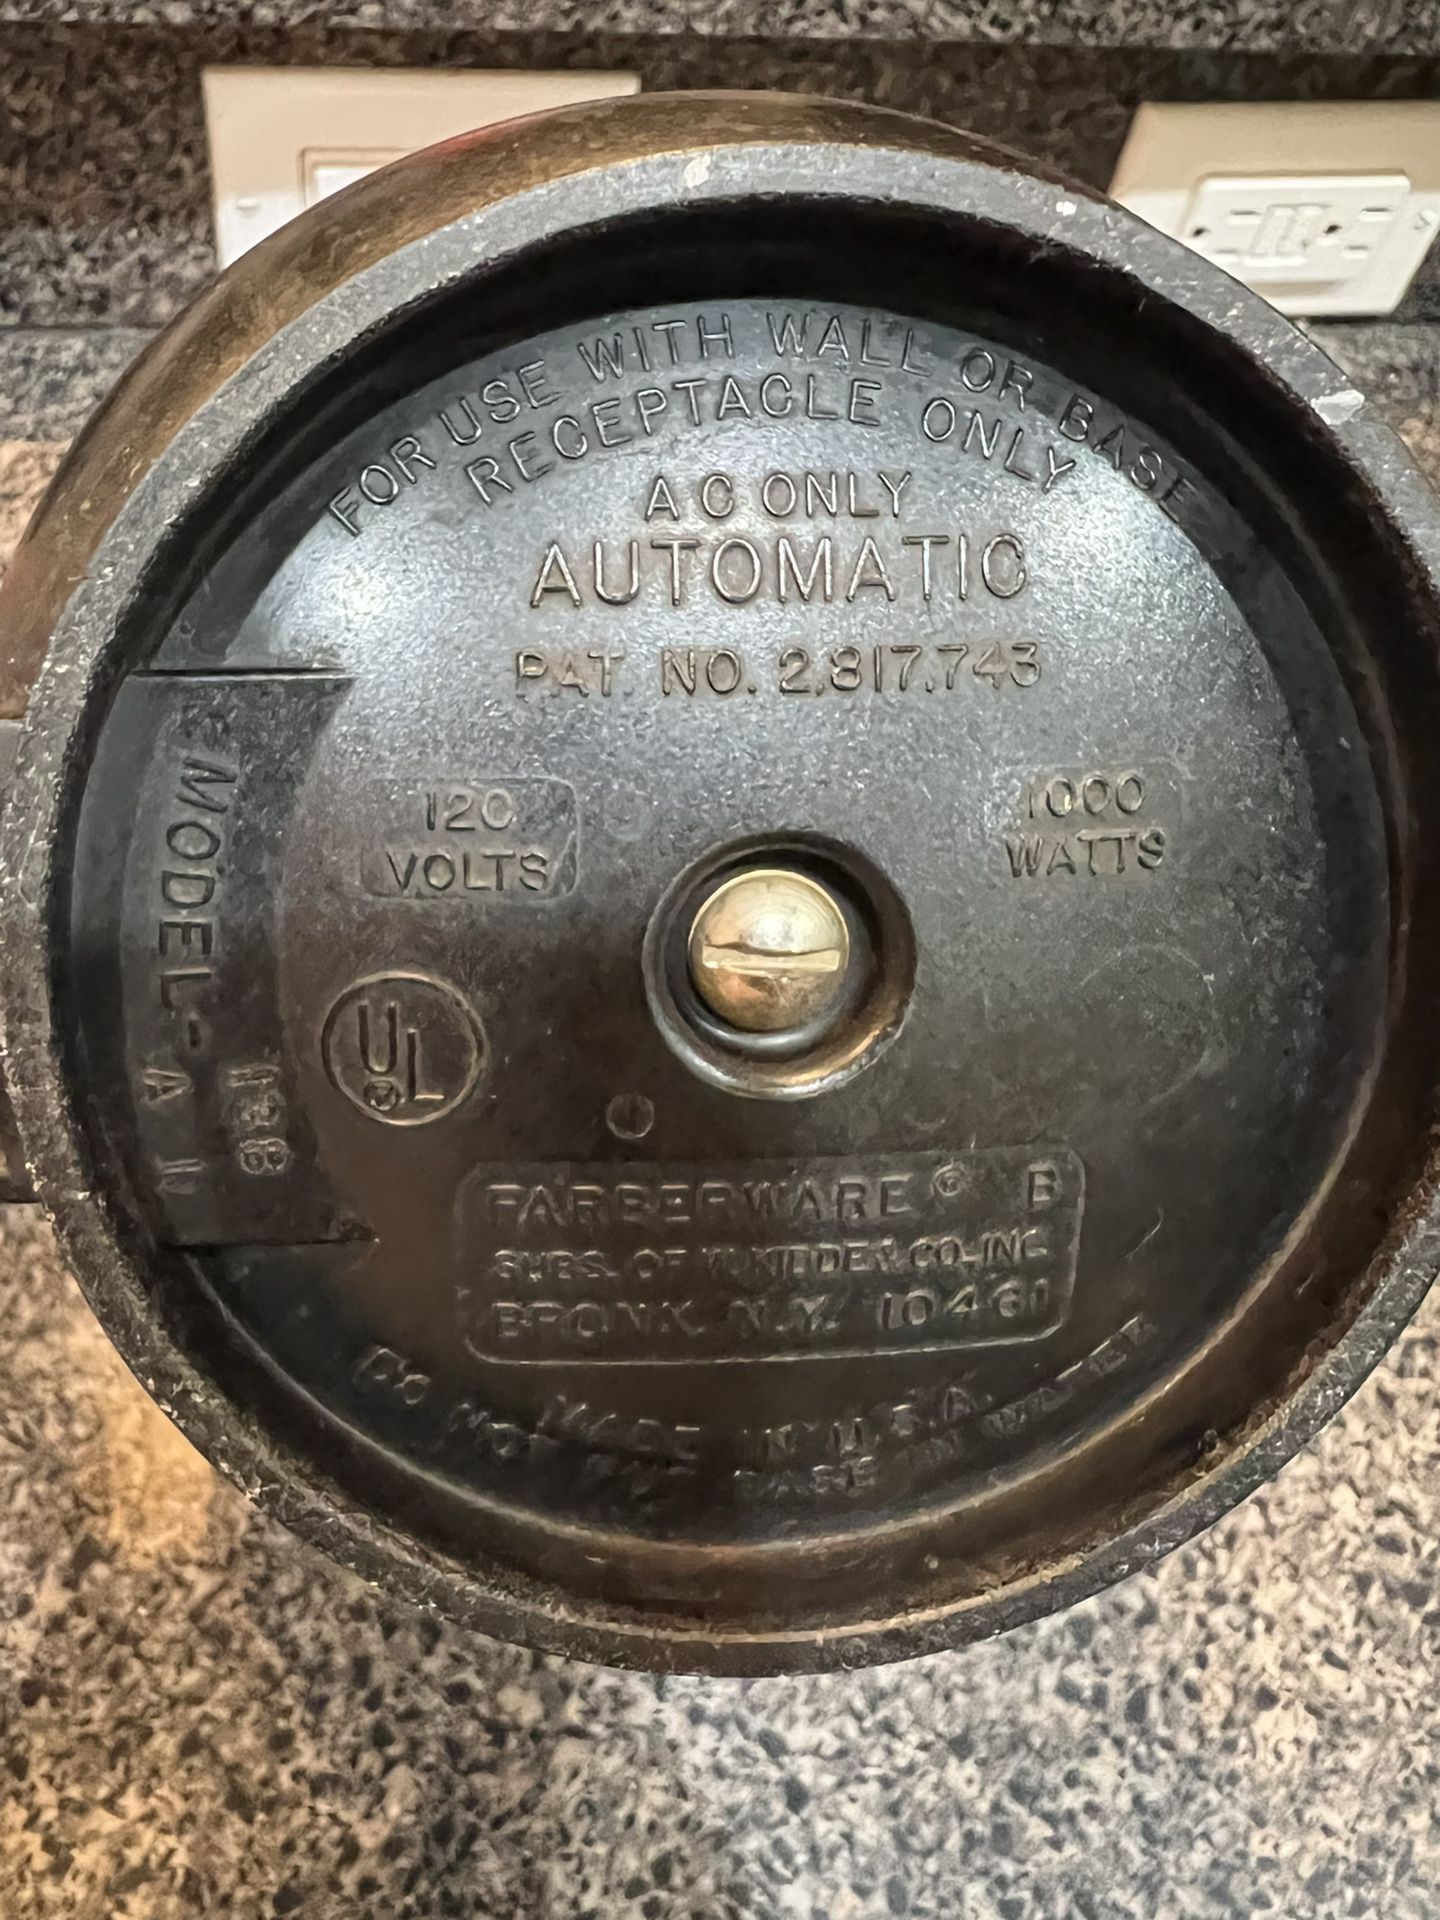 Vintage Farberware Automatic Coffee Percolator Model 138 2-8cups